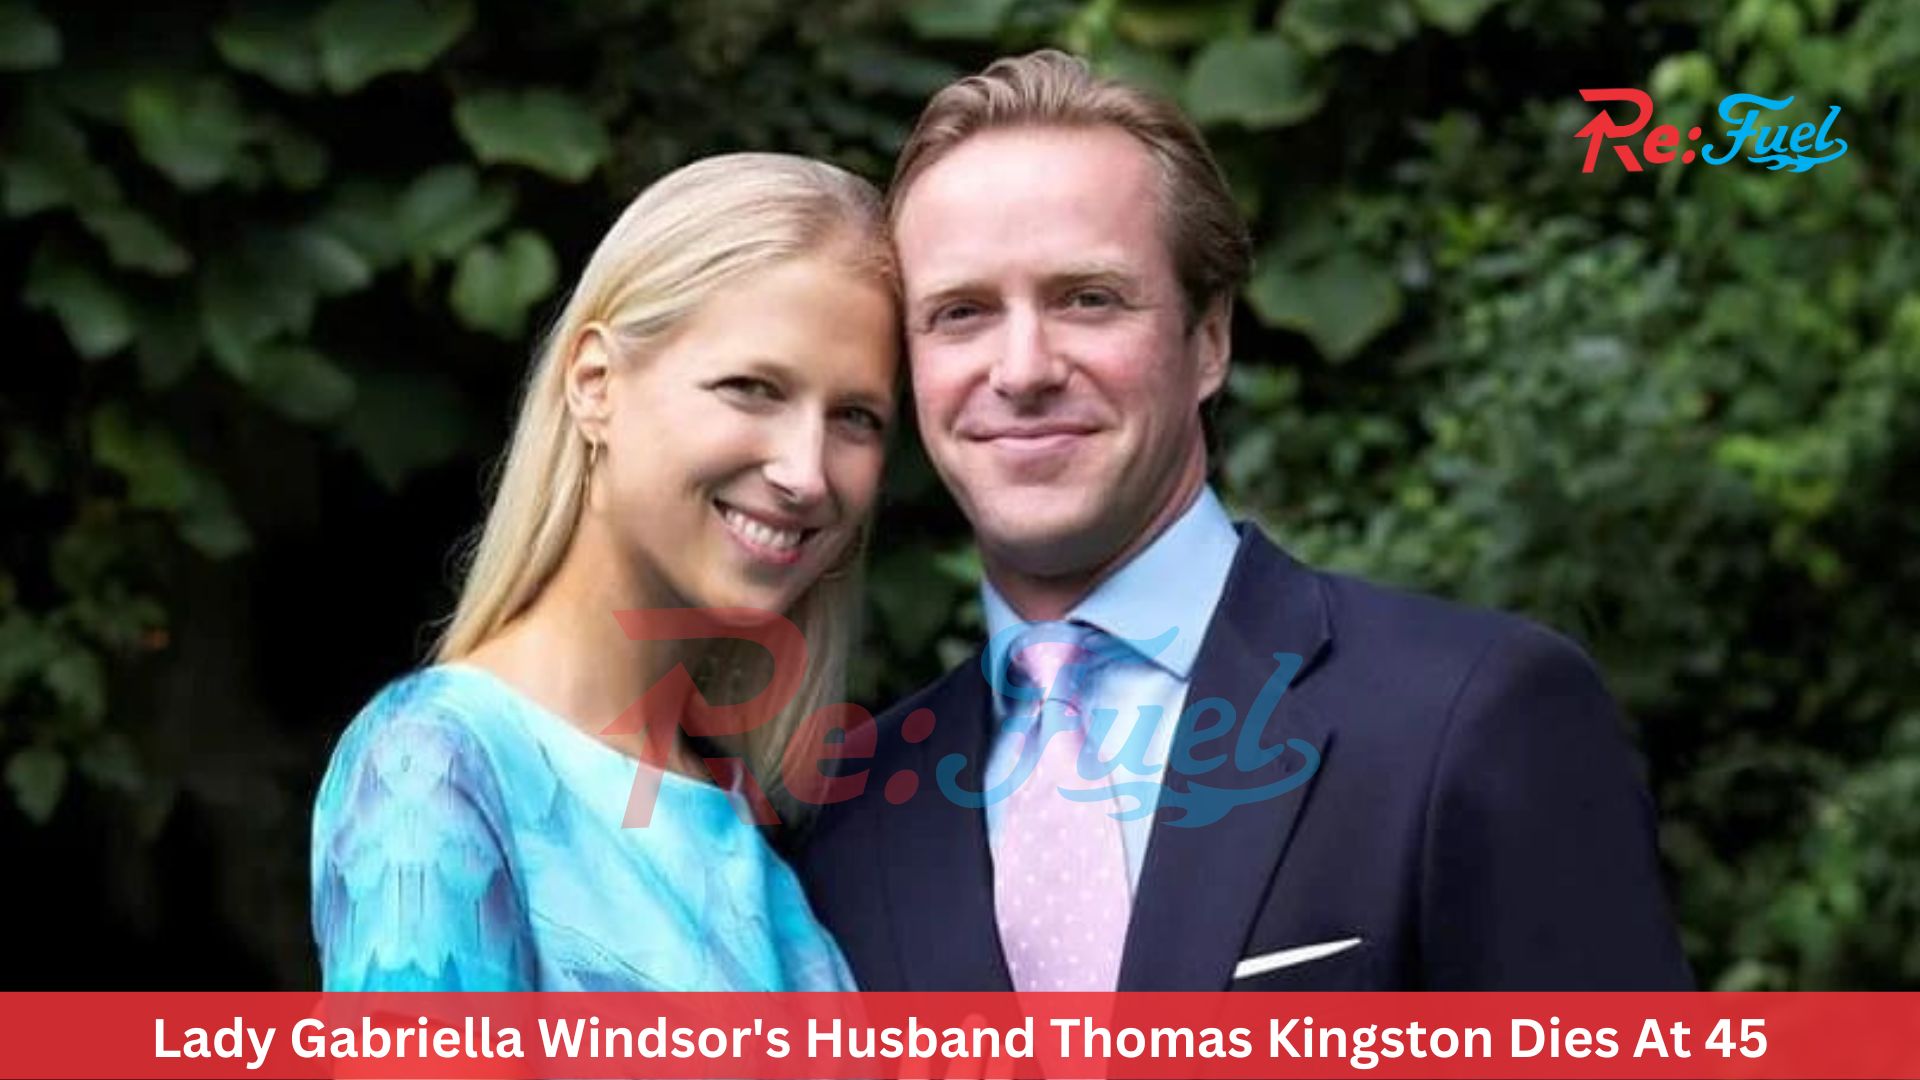 Lady Gabriella Windsor's Husband Thomas Kingston Dies At 45